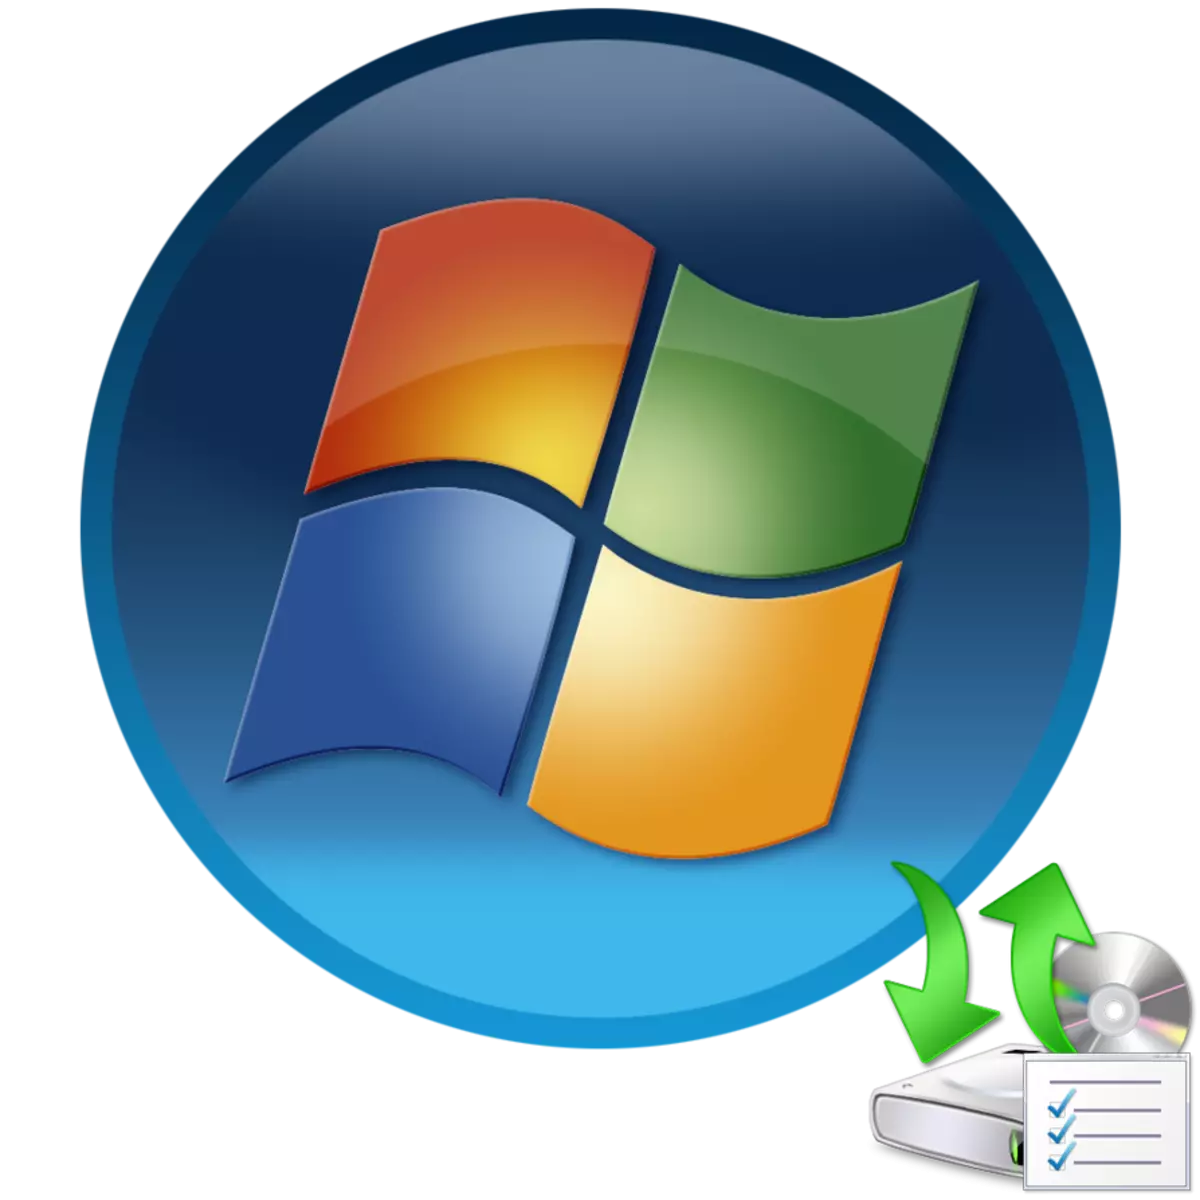 Windows 7 లో డ్రైవర్ల సంస్థాపన